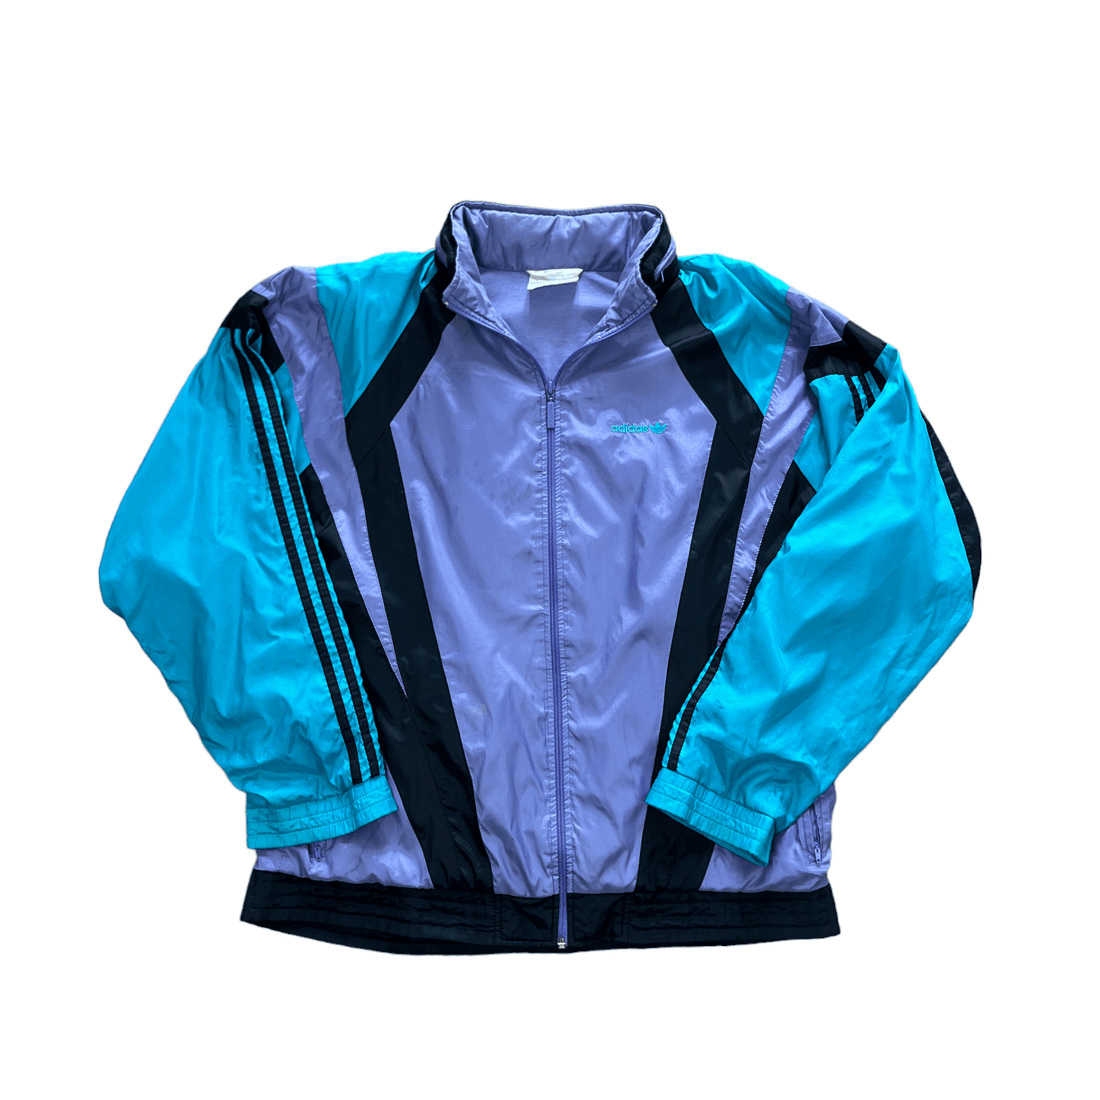 Vintage 90s Blue, Black + Purple Adidas Jacket - Extra Large - The Streetwear Studio